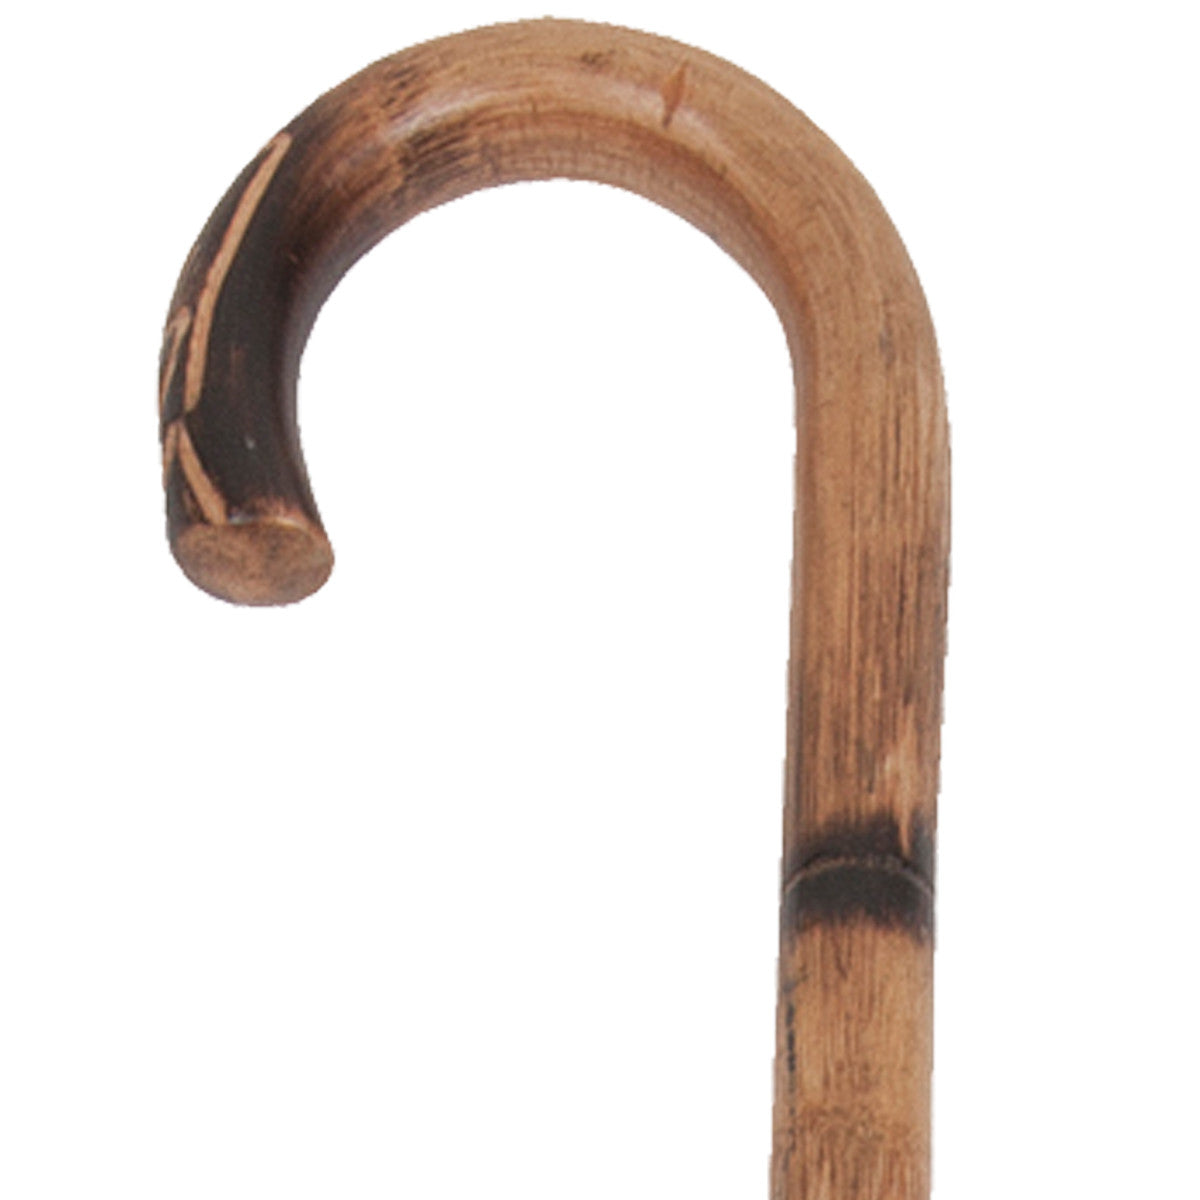 Round Handle Wood Cane - Black 1, $17.99